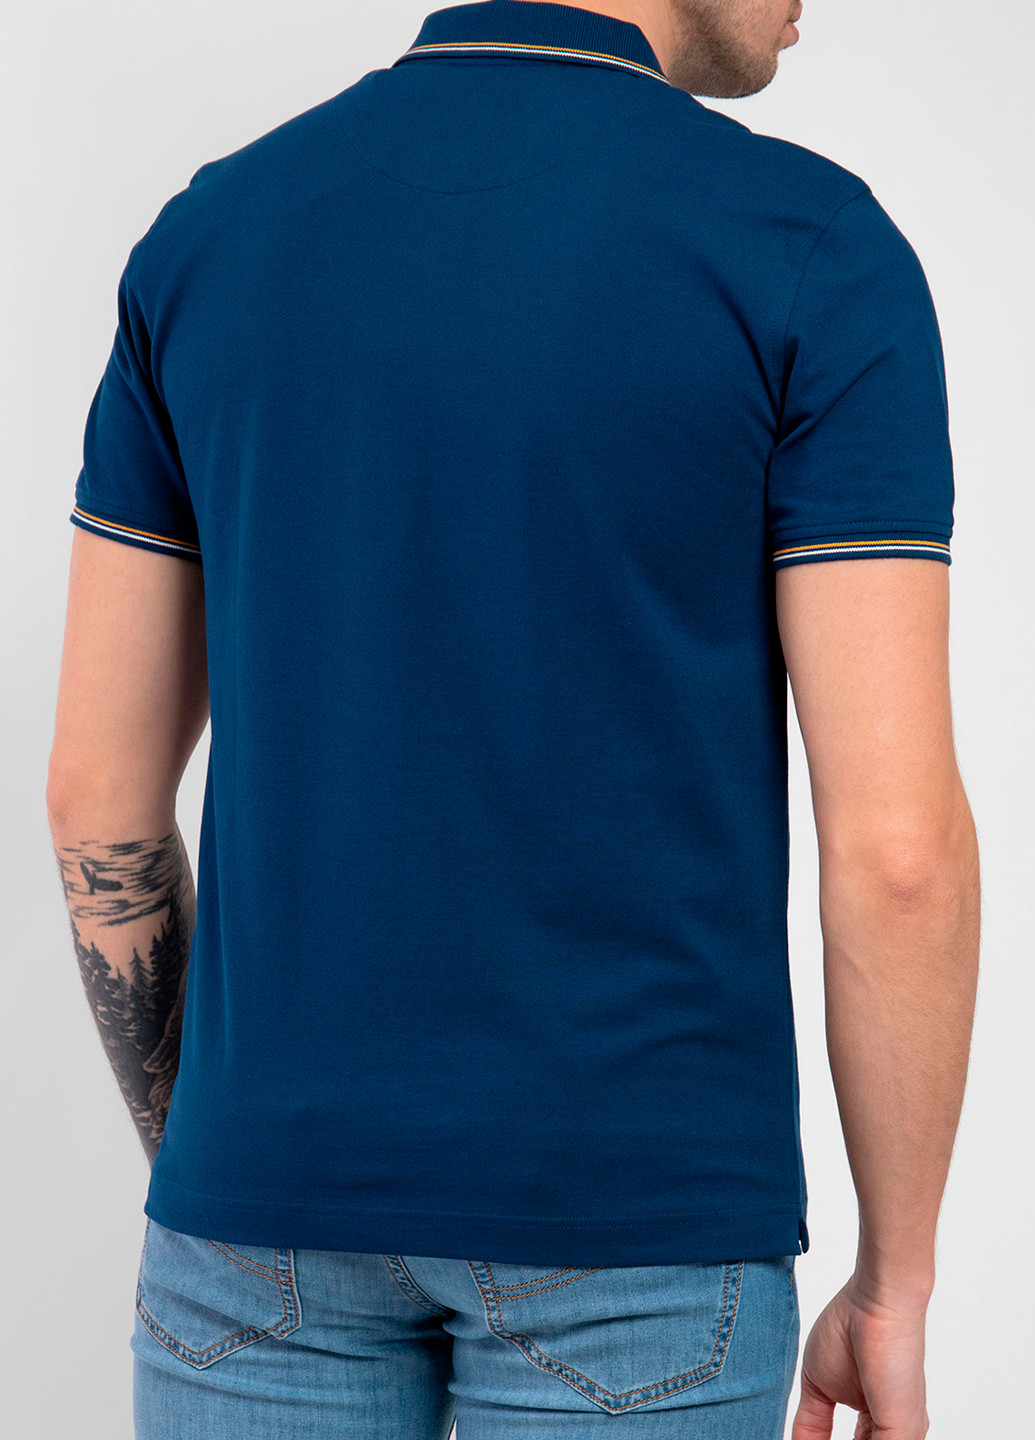 Синяя футболка-поло для мужчин Harmont & Blaine